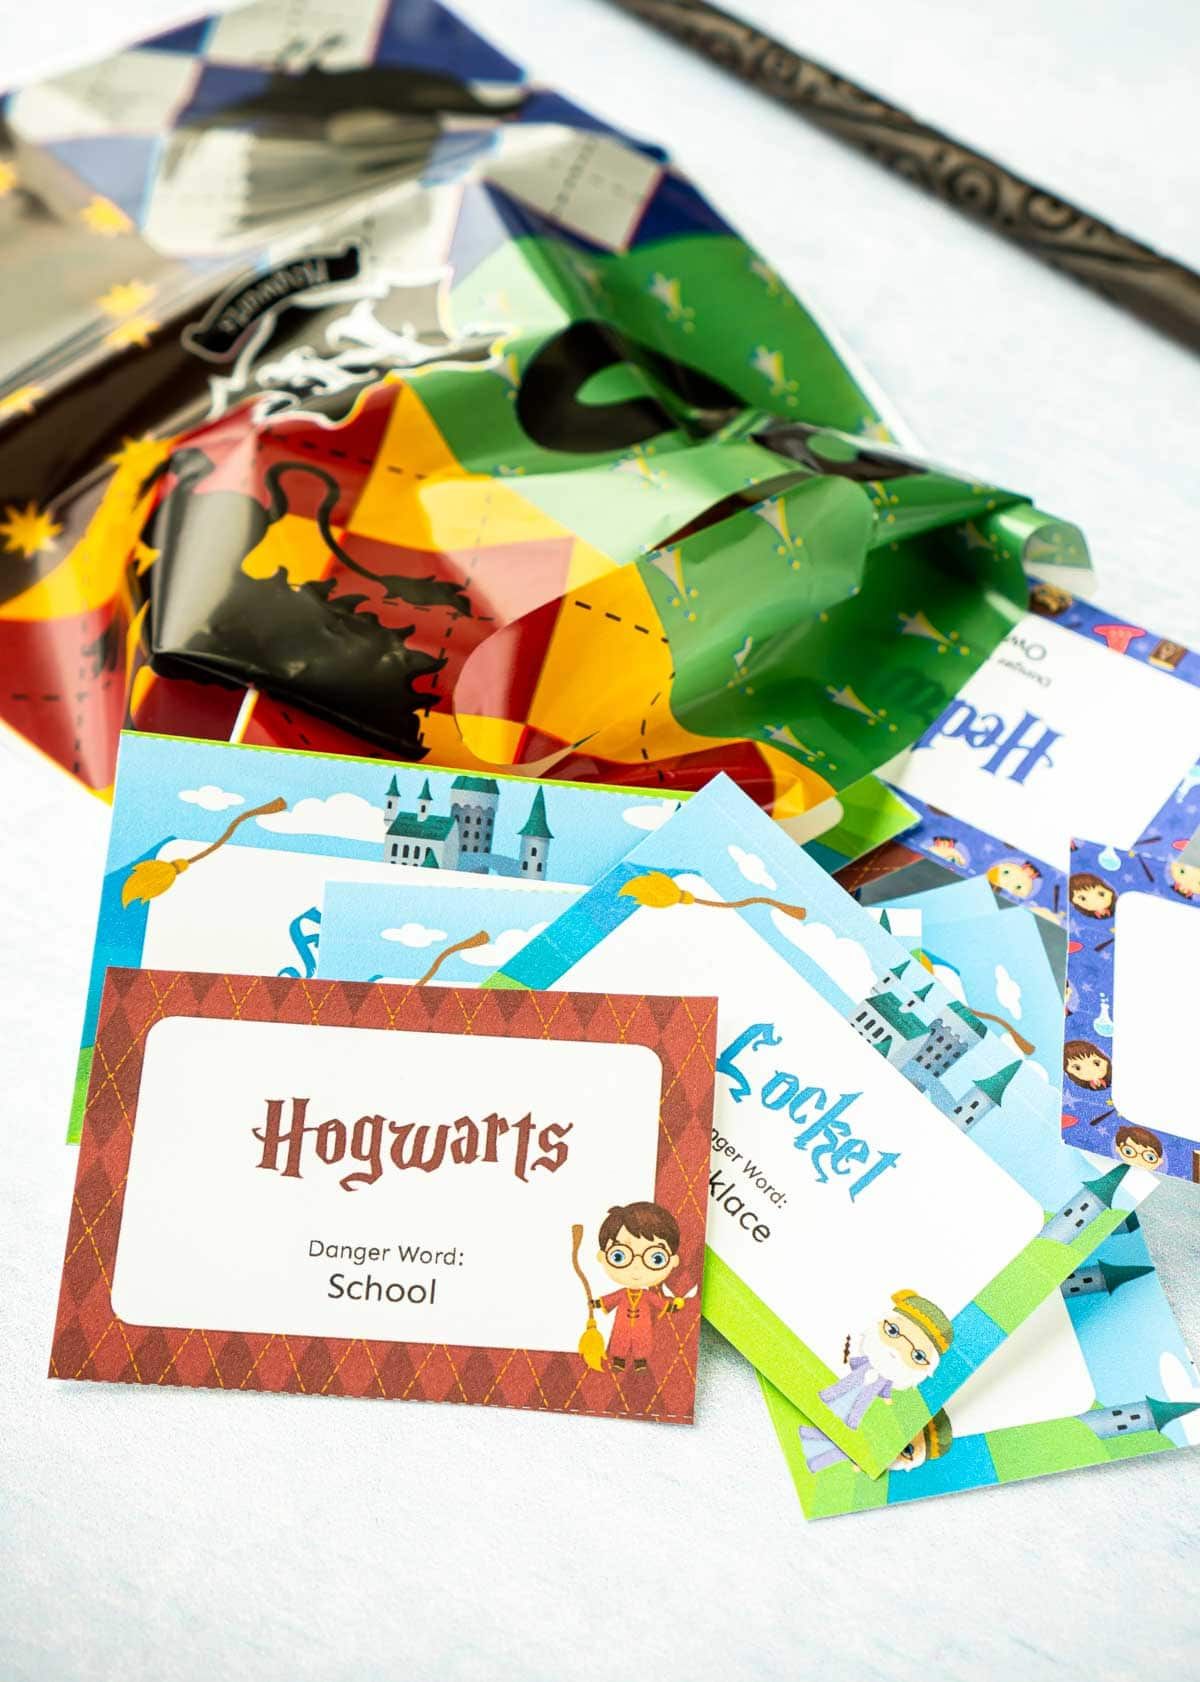 Kad kertas kecil dengan frasa Harry Potter di atasnya dan beg Goodry Harry Potter